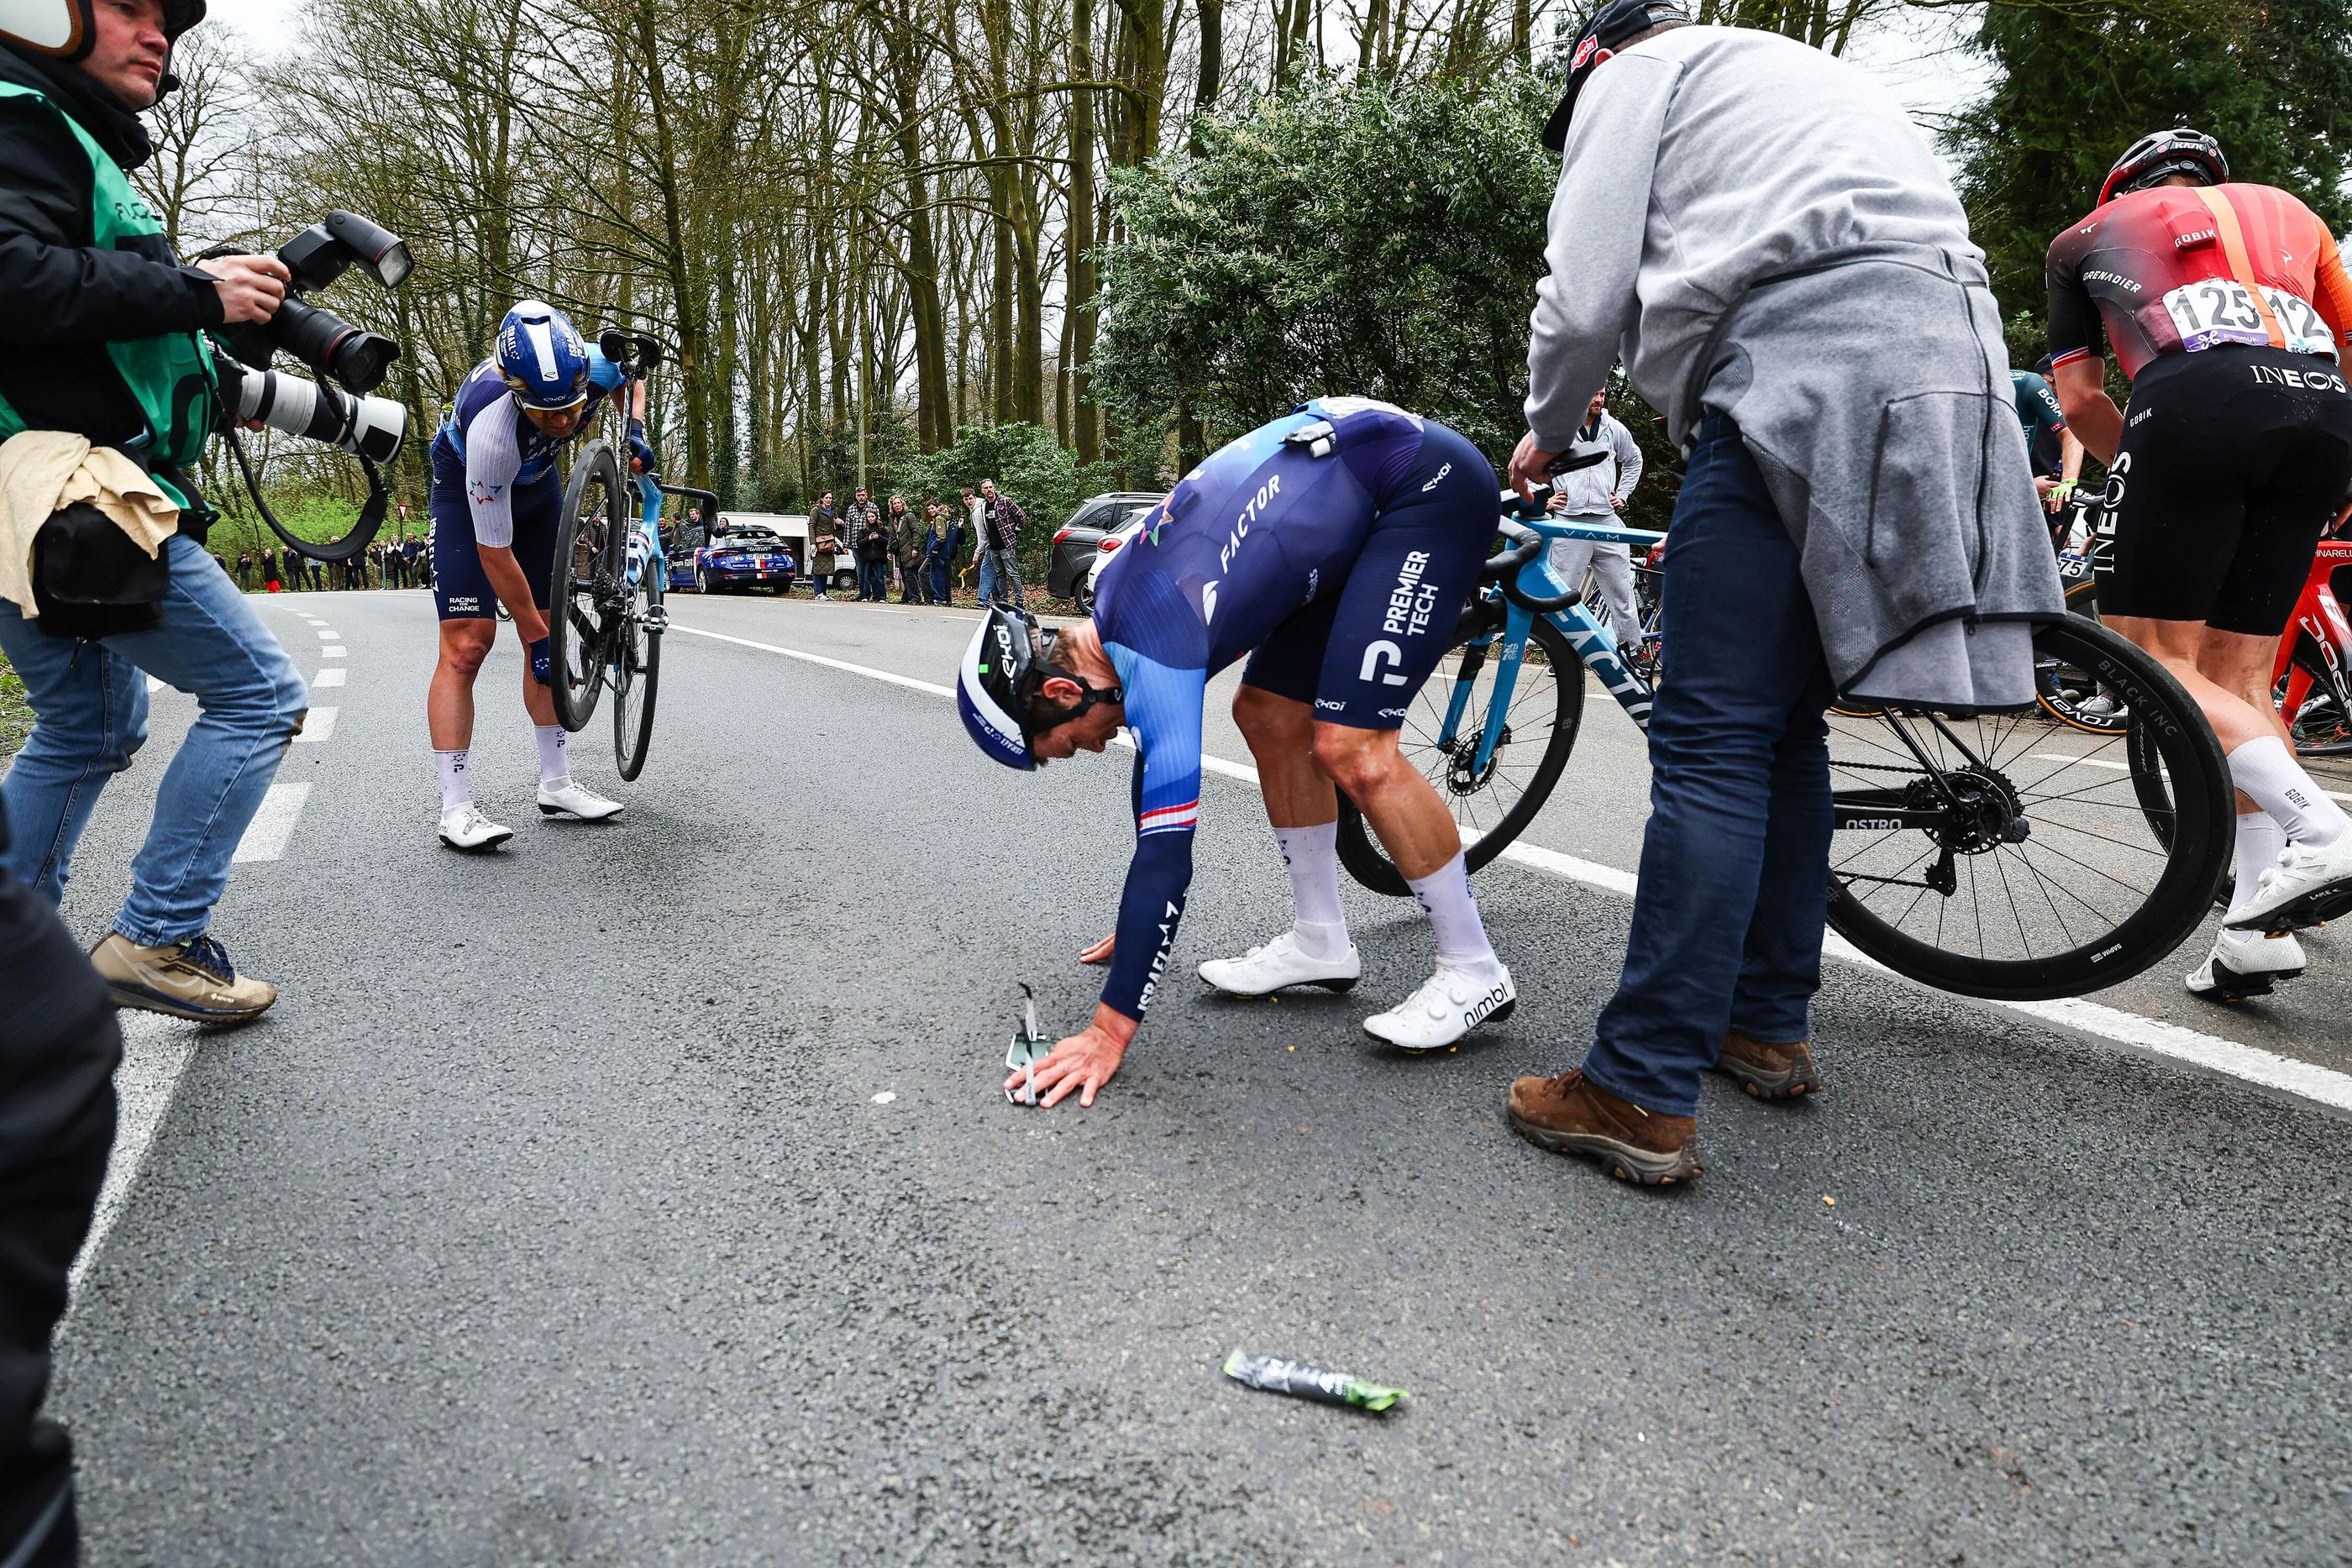 A la suite d'une chute des coureurs lors du Tour des Flandres ce dimanche, Anke Sneyers, spectatrice au bord de la route, a été renversée et elle risque de manquer les Jeux paralympiques. Icon Sport